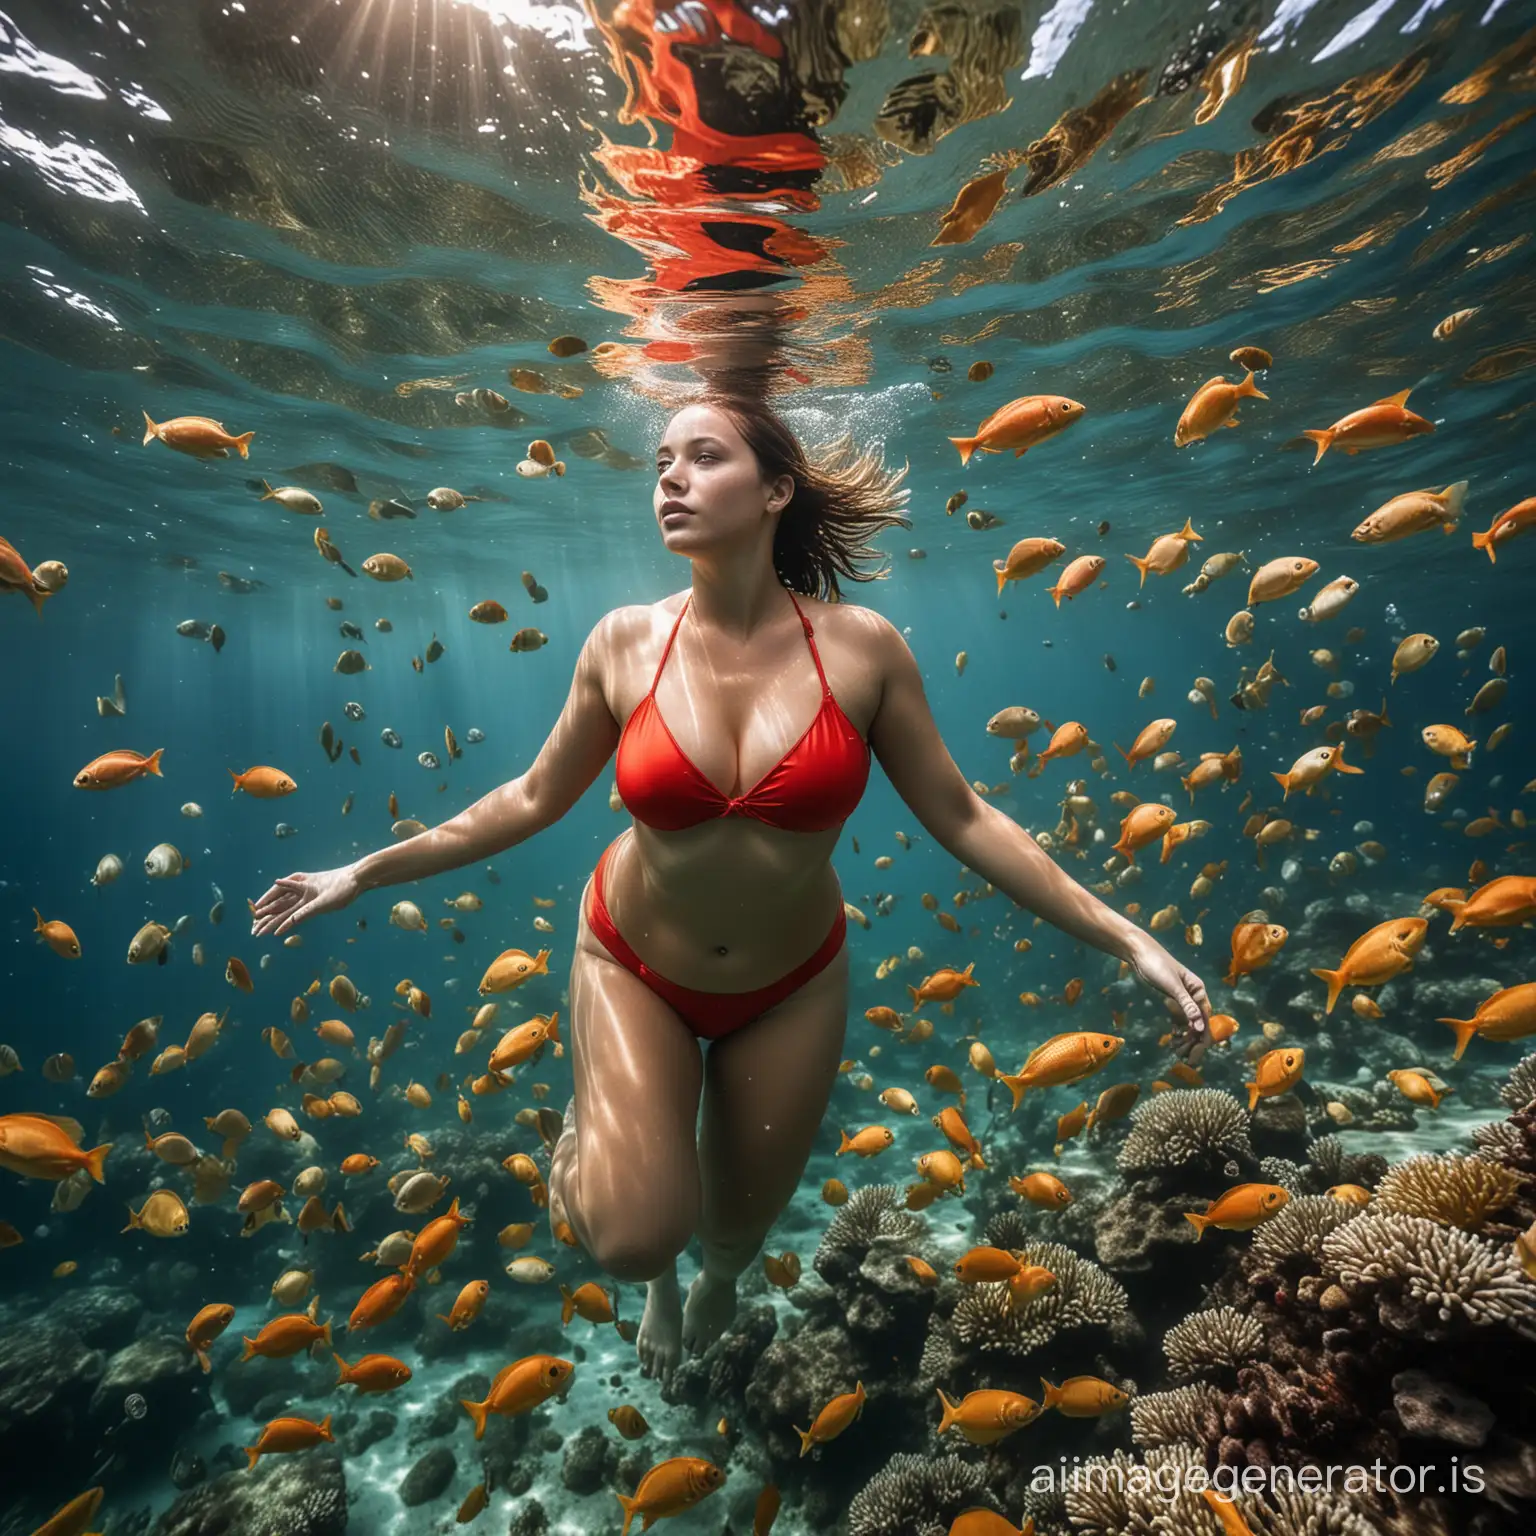 une photo d'une nageuse prise en dessous d'elle, elle porte un bikini rouge trop petit, elle est potelée avec des formes très généreuses, la photo est prise sous l'eau de l'océan indien avec de nombreux poissons de différentes couleurs:  jaunes, bleus, oranges, verts, rouges, présence de corail et d'algues